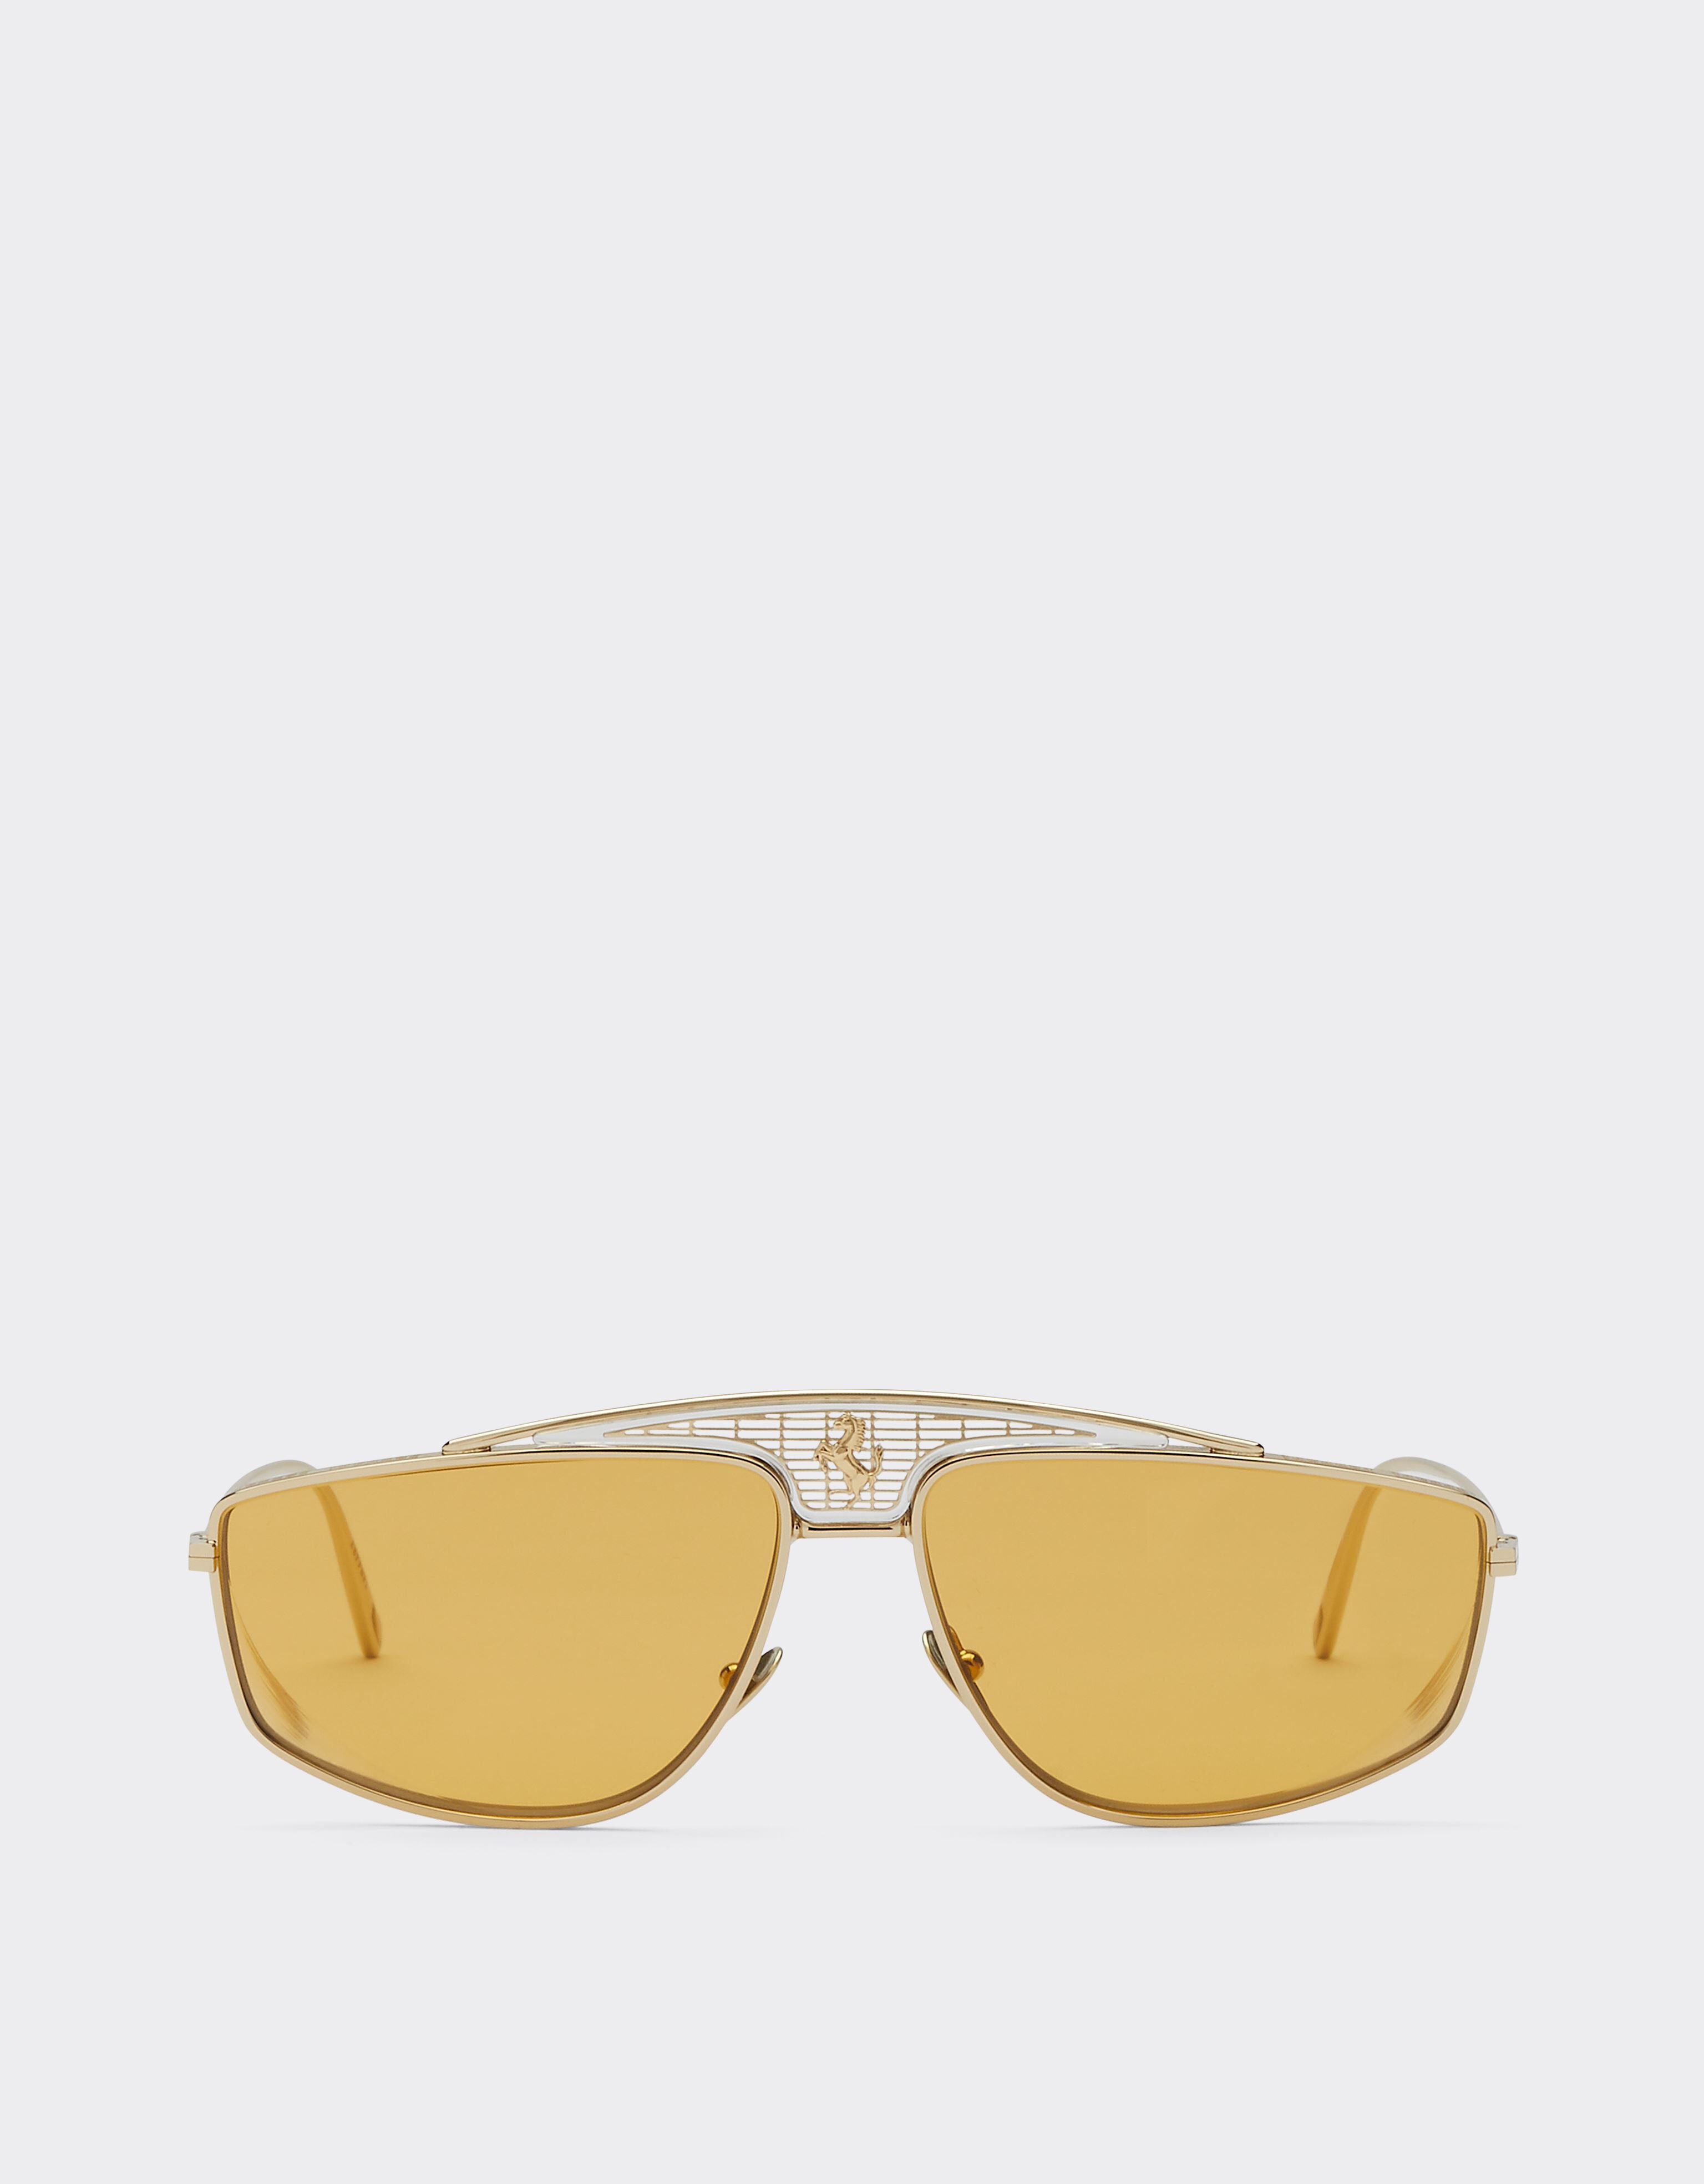 Ferrari Ferrari-Sonnenbrille mit gelben Gläsern Schwarz F1201f